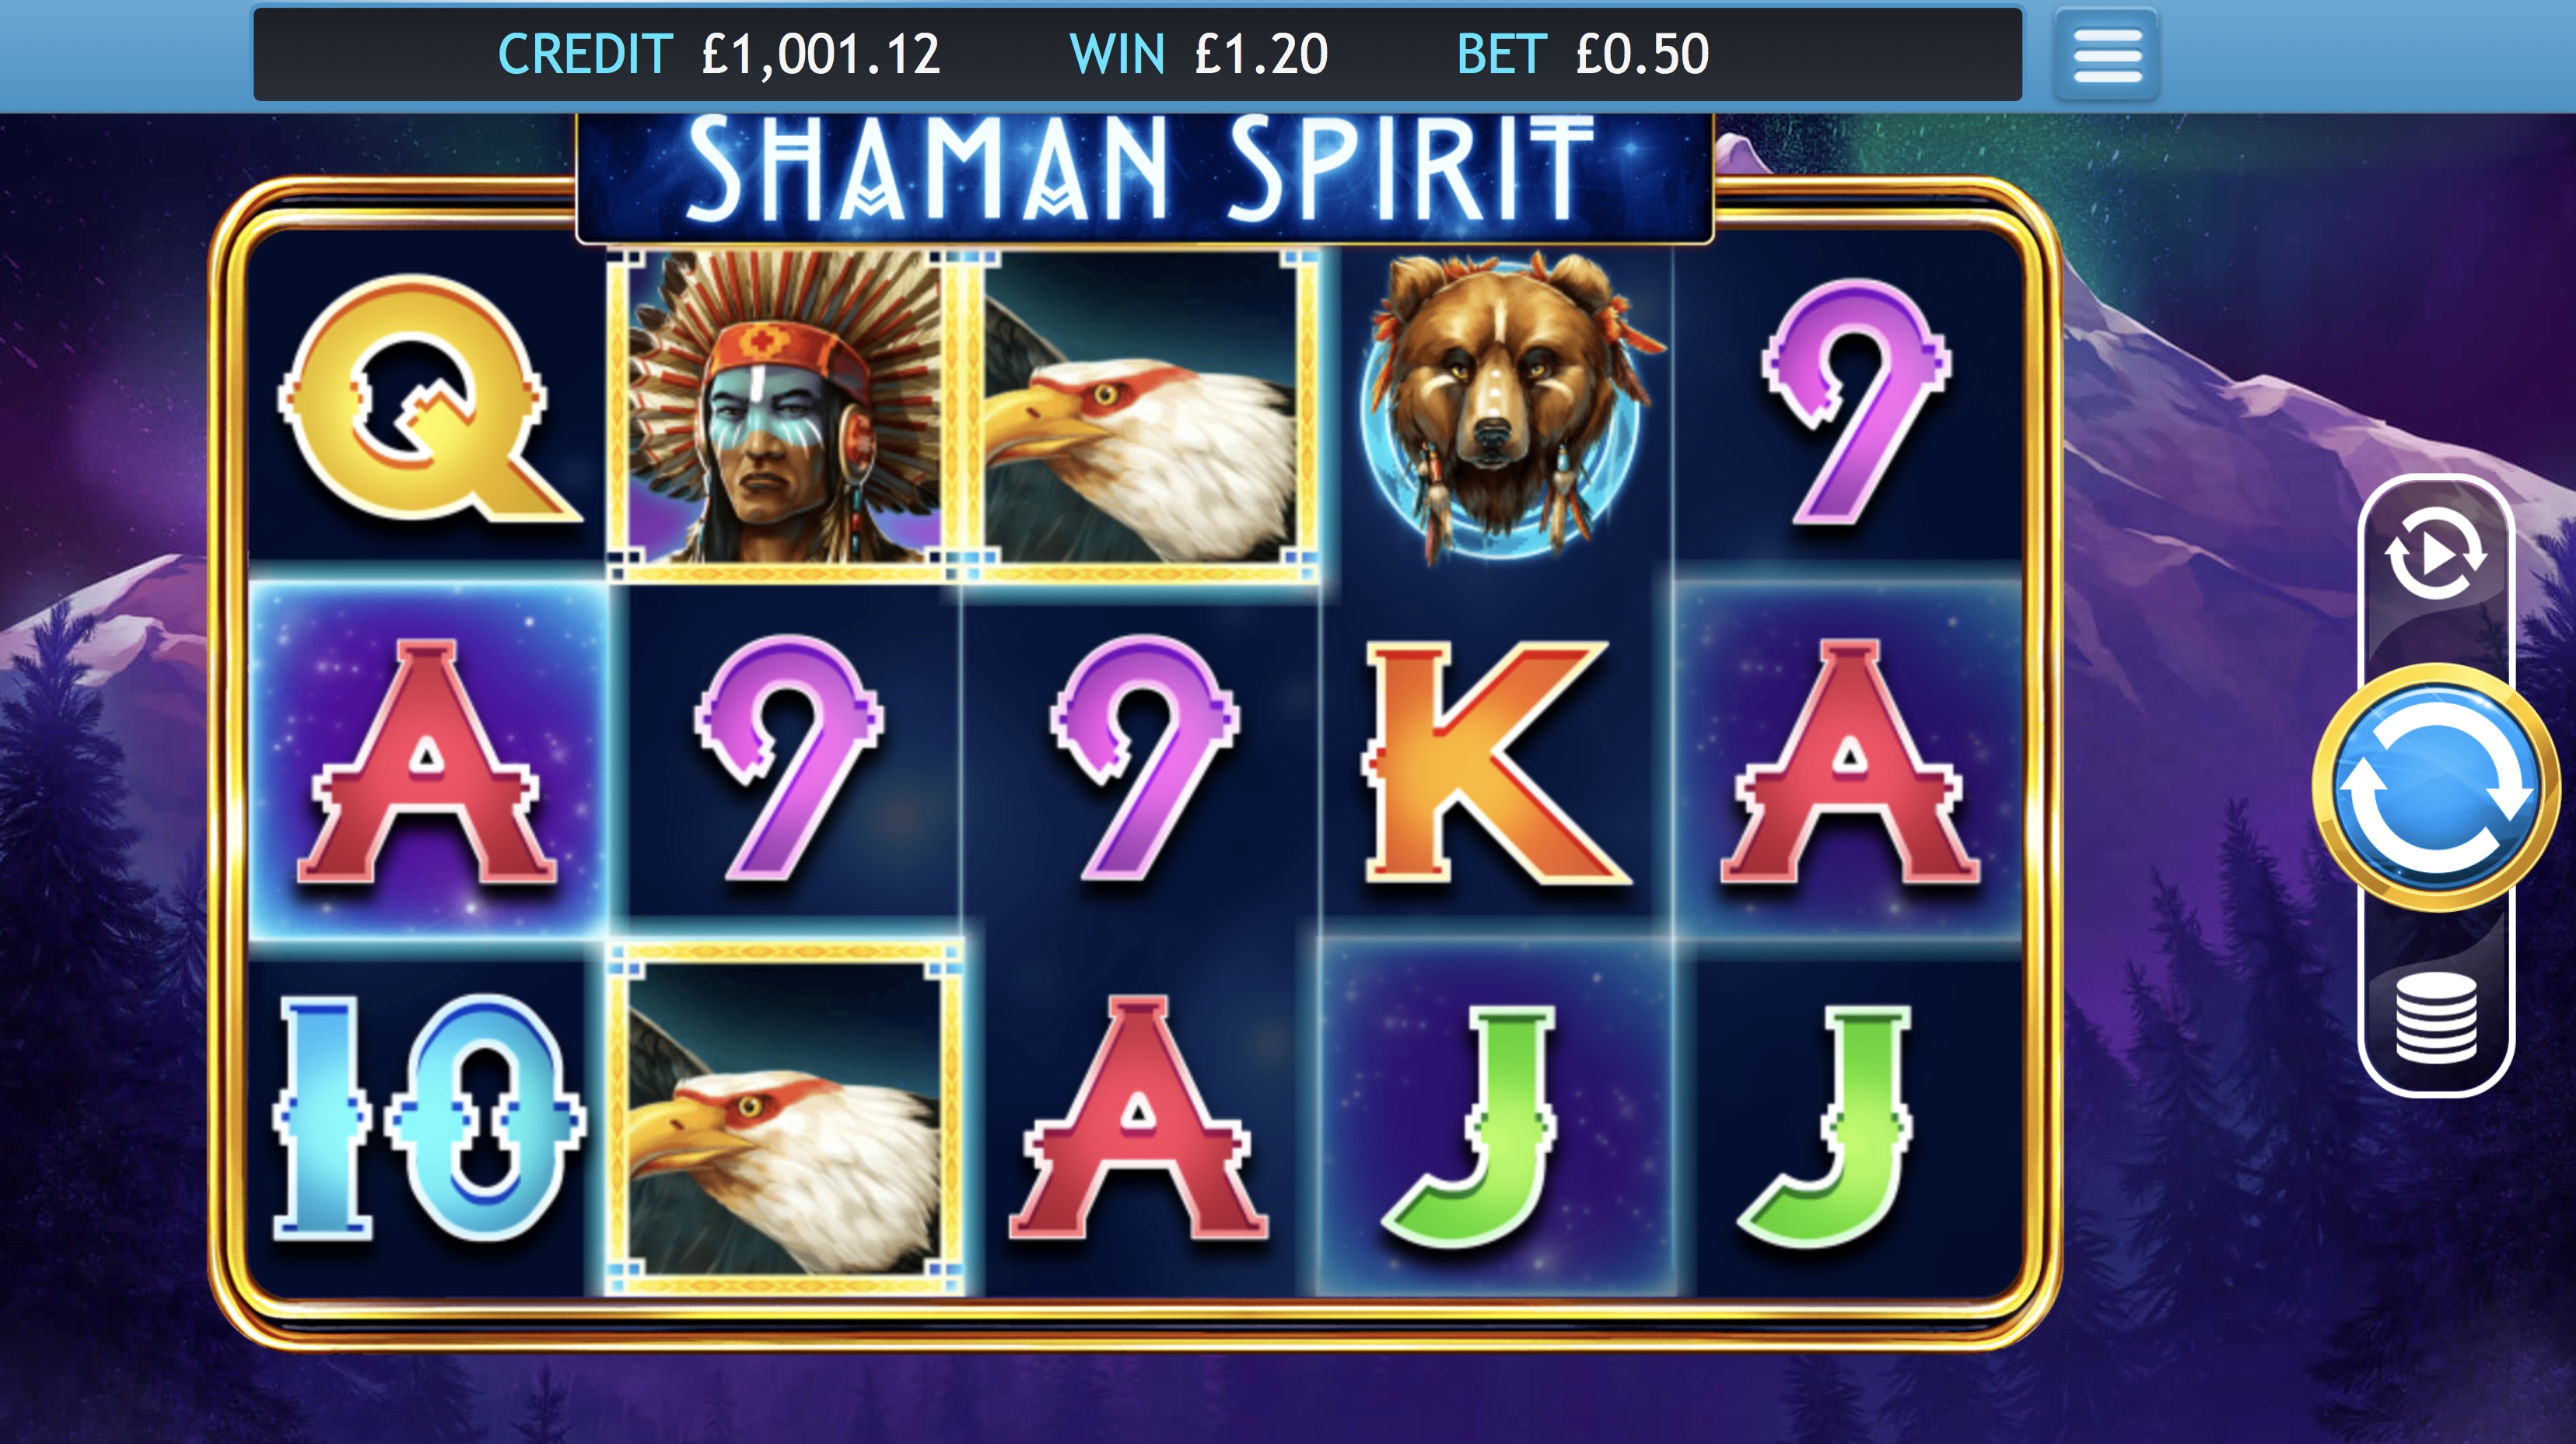 Shaman Spirit online slots game gameplay